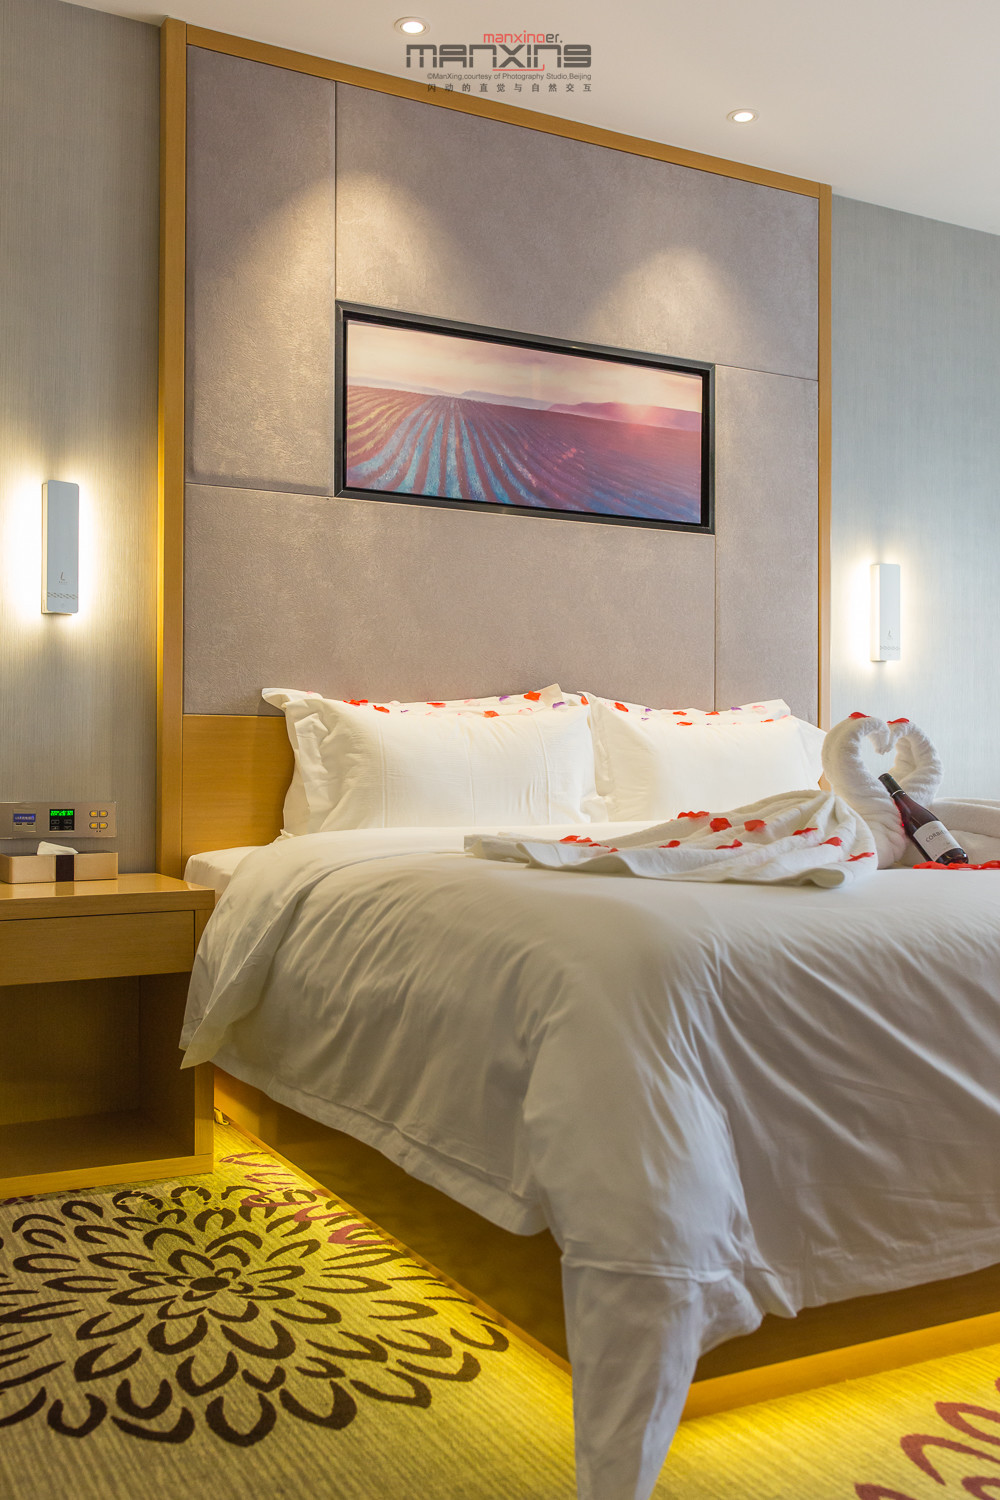 床上造型有种重温蜜月的感觉,感谢客房服务员的贴心和细心的造型设计.